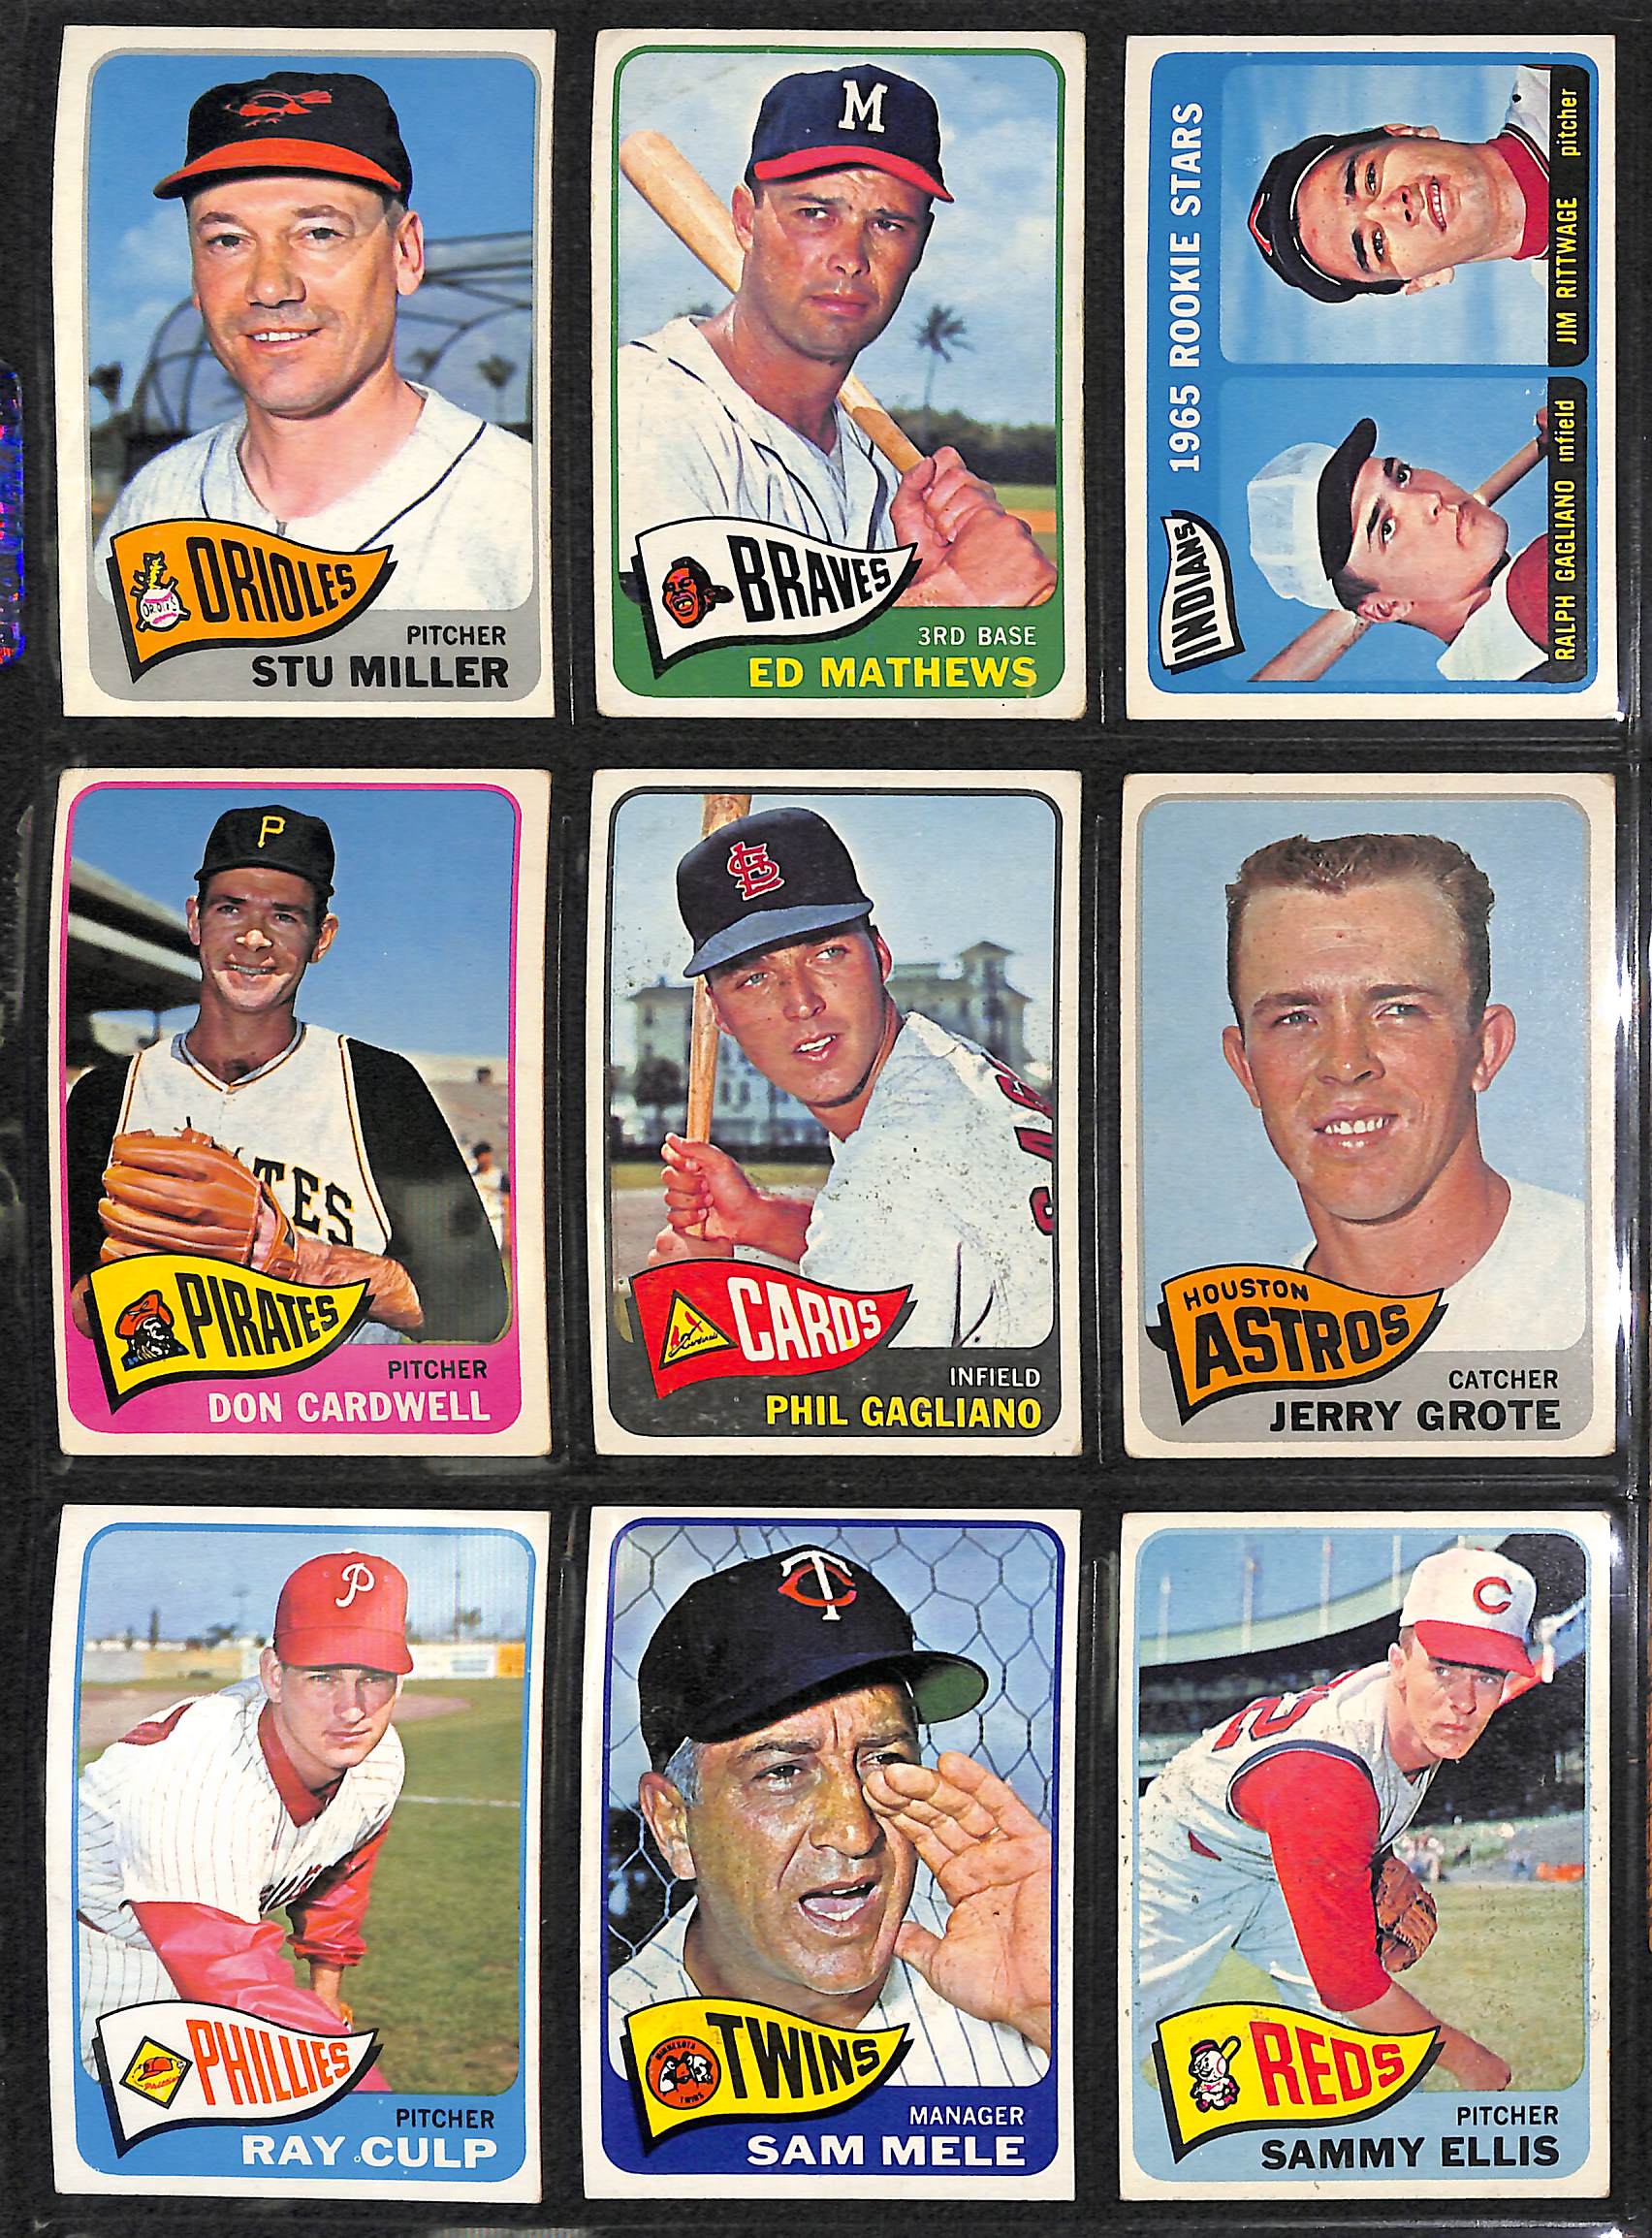 topps-2020-updates-mlb-baseball-trading-cards-blaster-box-98-cards-4